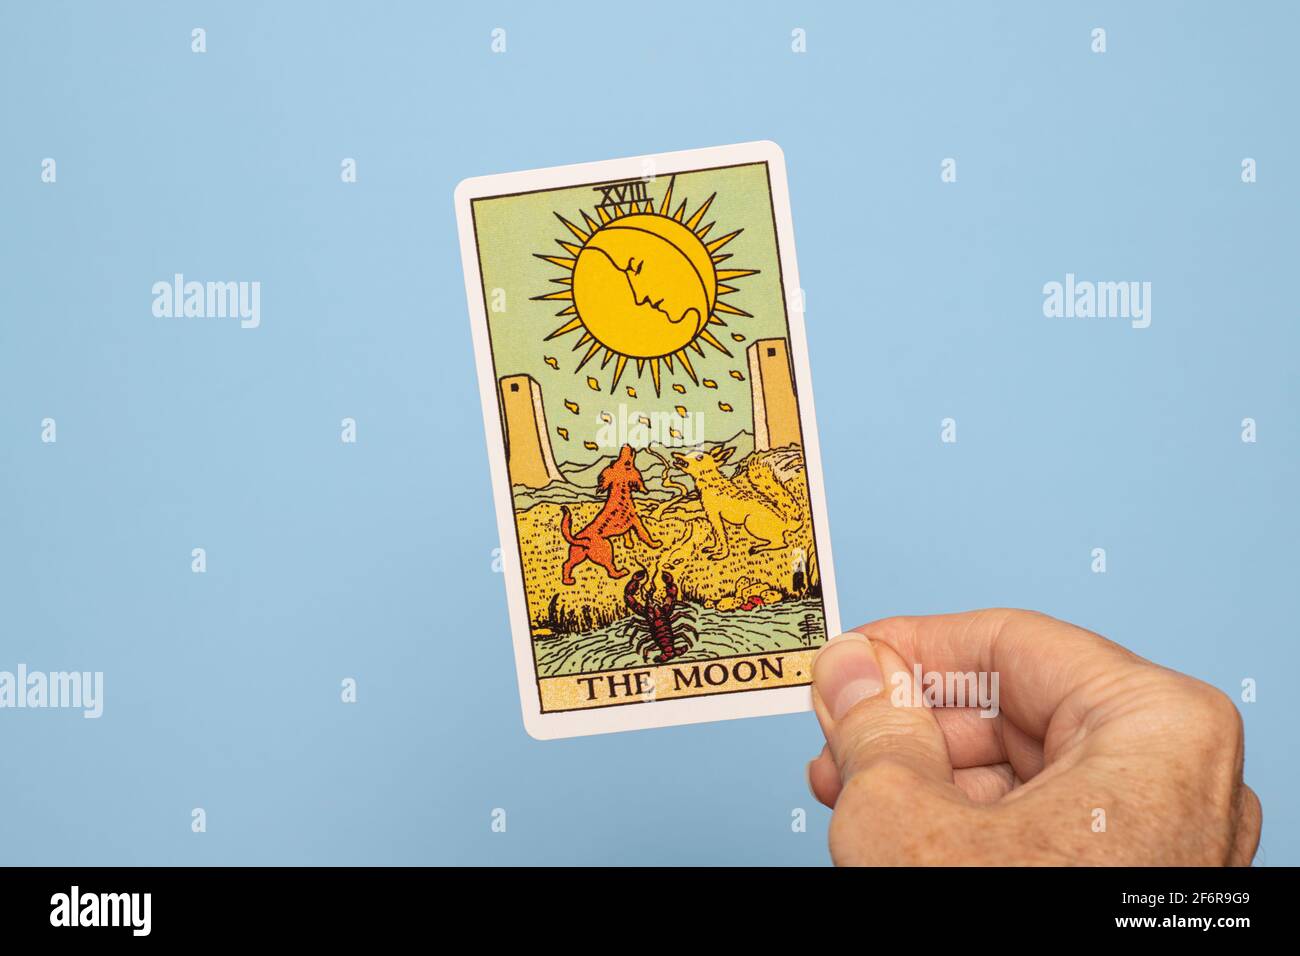 Hand holding The Moon Tarot card Stock Photo